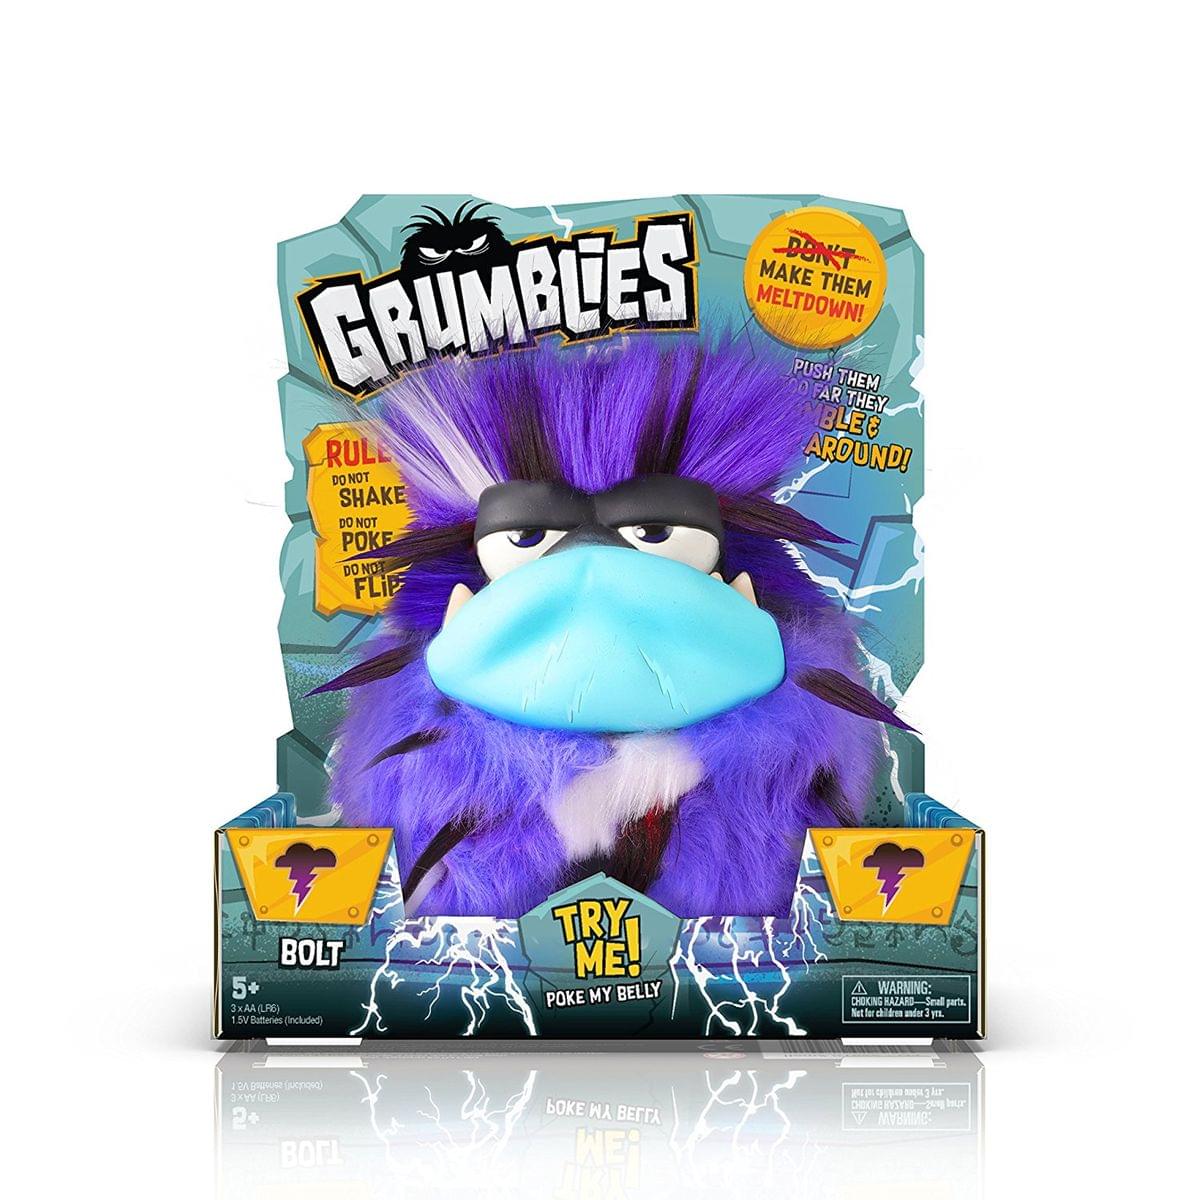 Grumblies Interactive Pet Monster Plush - Bolt